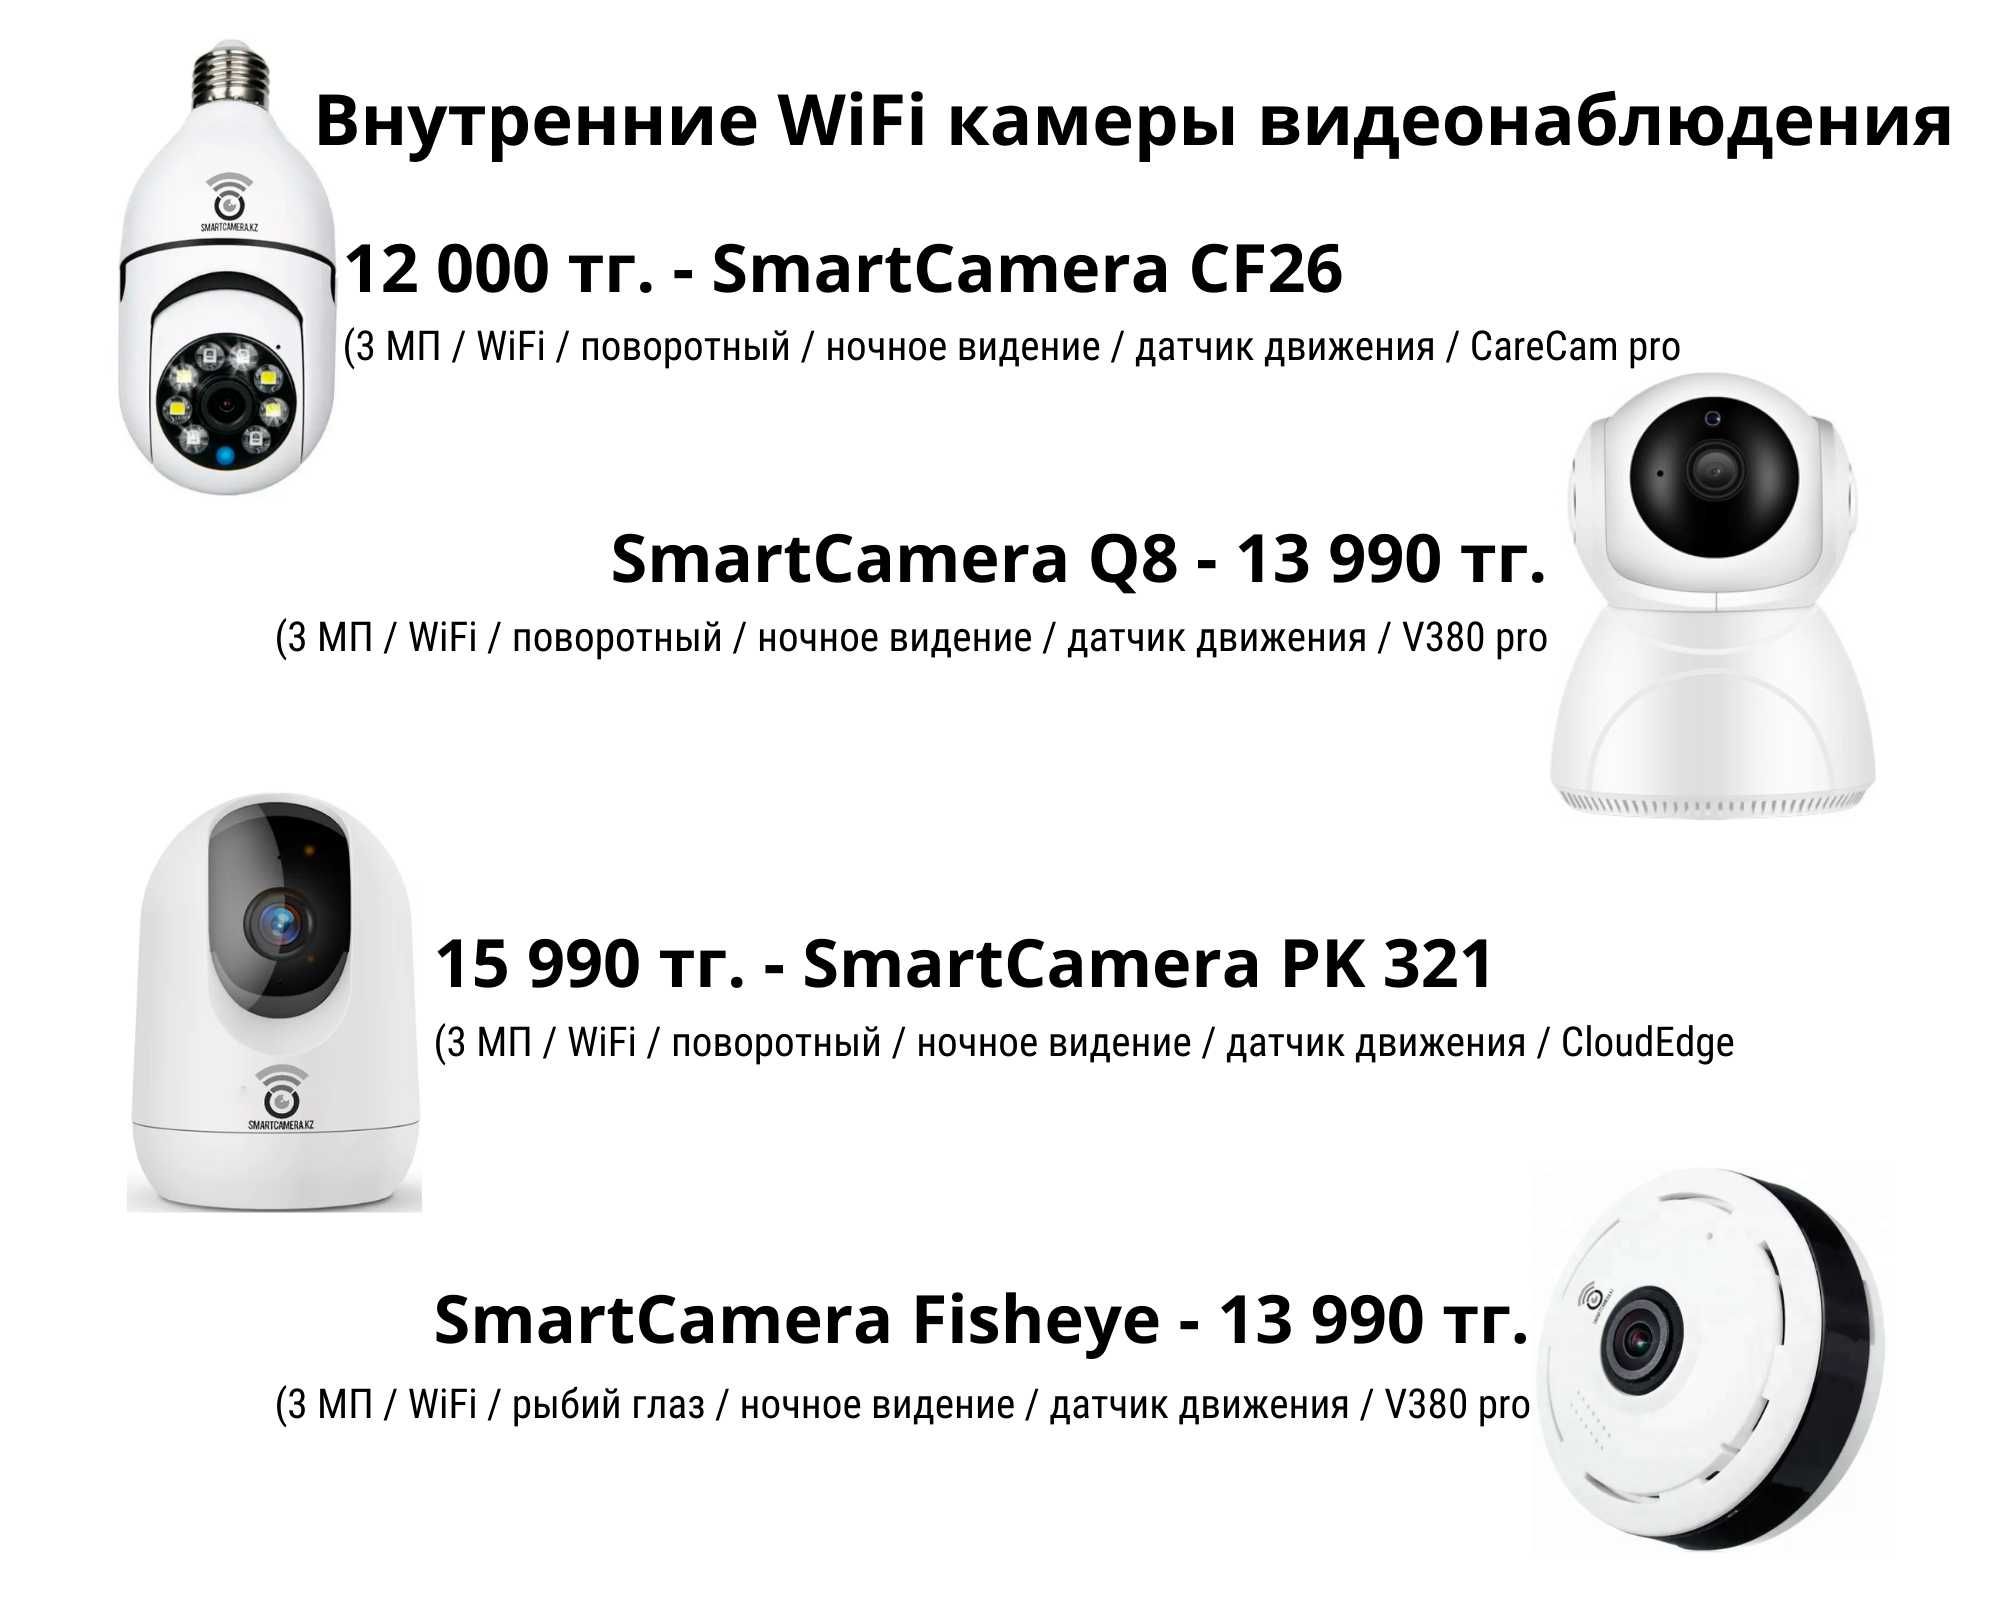 WiFi и 4G камеры видеонаблюдения для дистанционного контроля